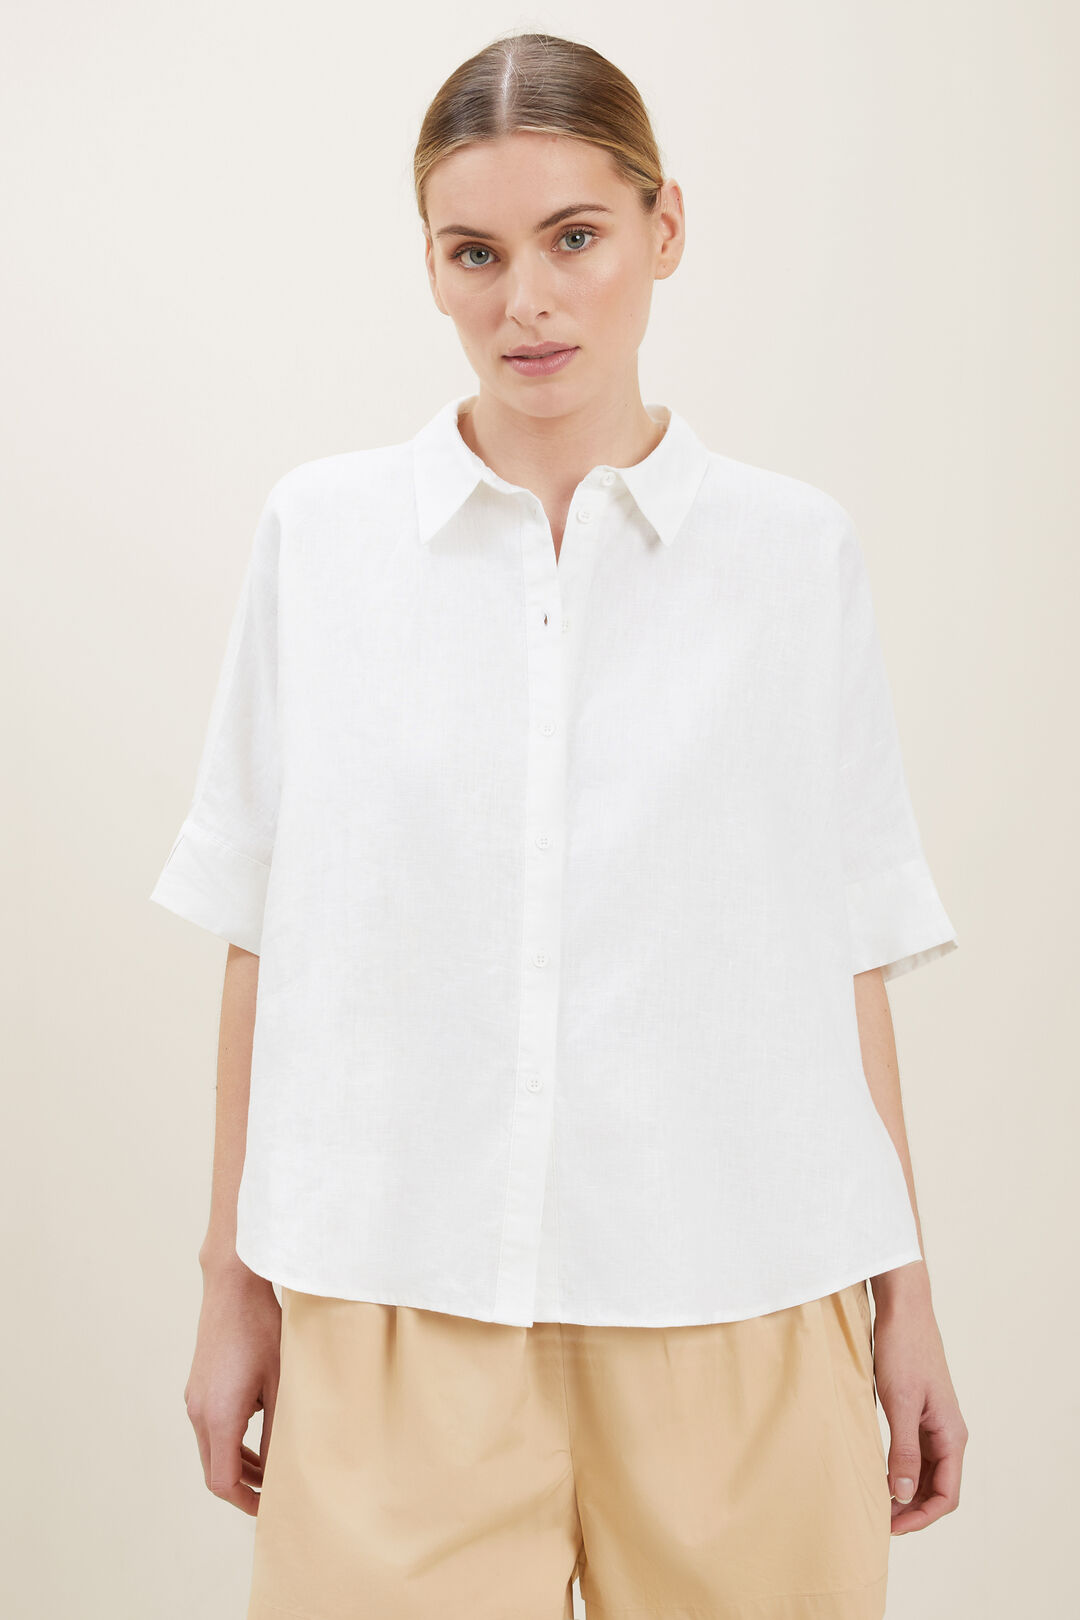 Linen Button-Down Shirt  Whisper White  hi-res